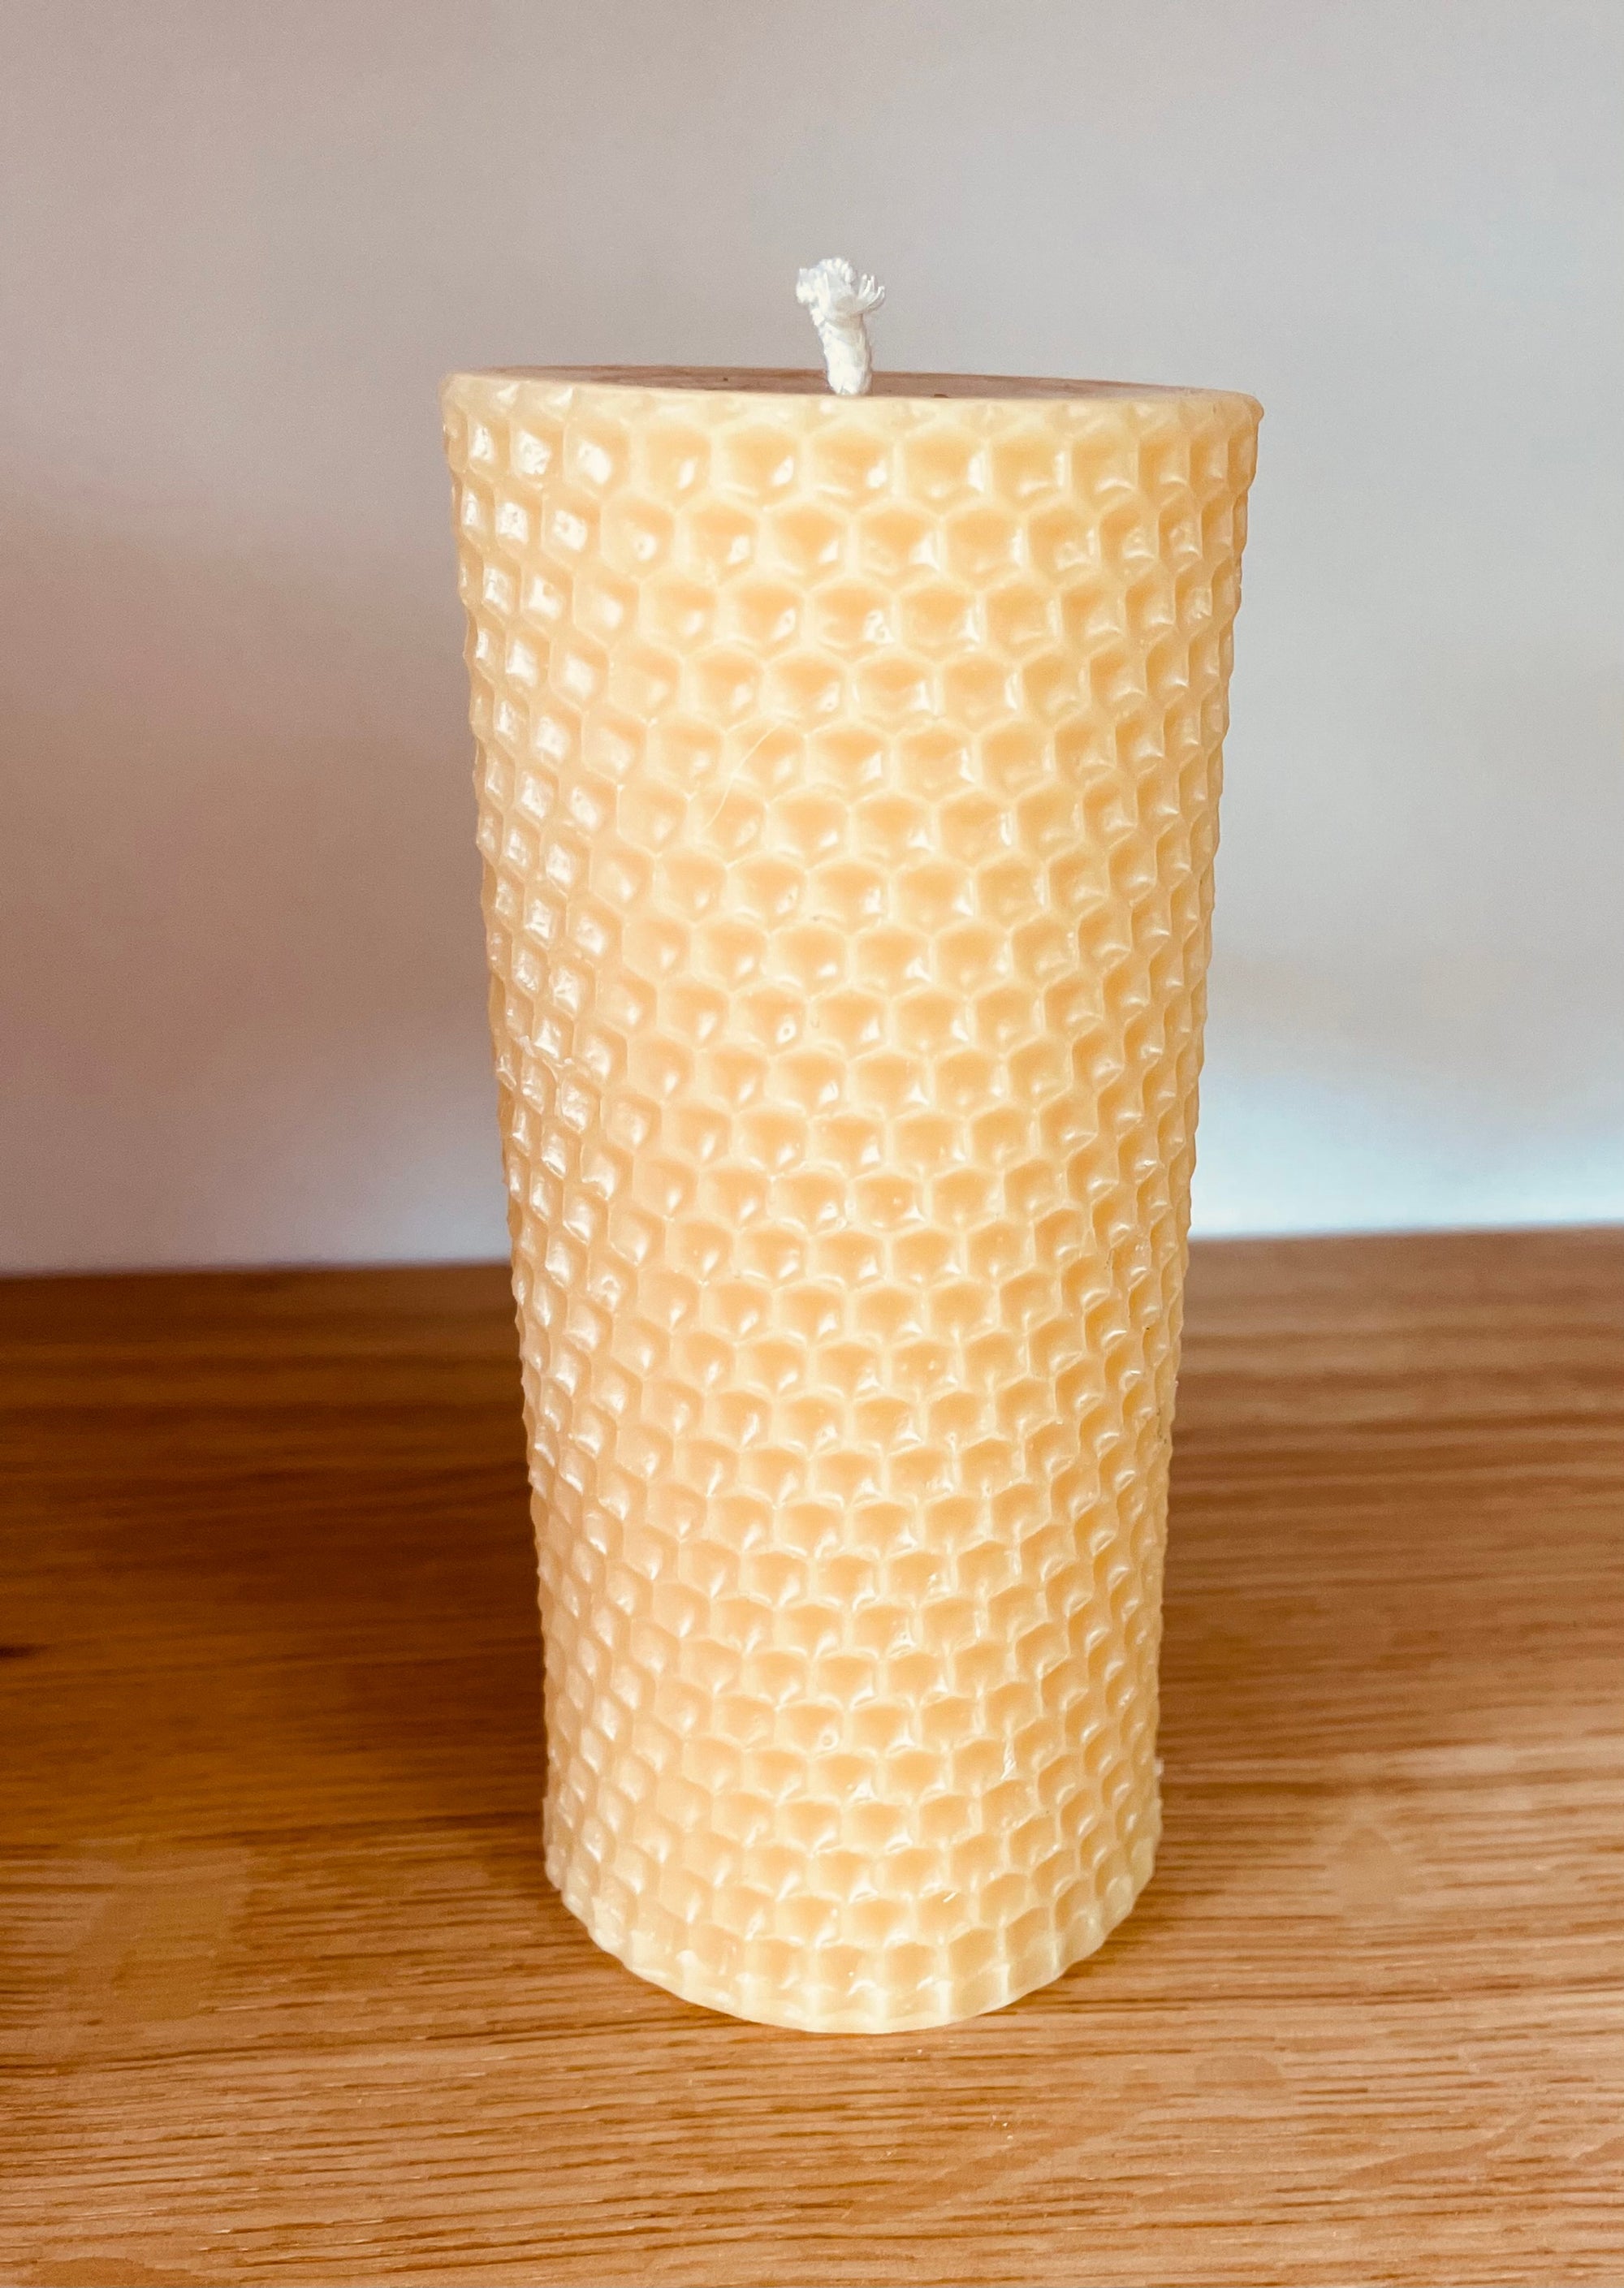 HONEYCOMB Pillar 4.85" Tall, 100% Pure Natural Yellow Beeswax , Long Burning, Ho